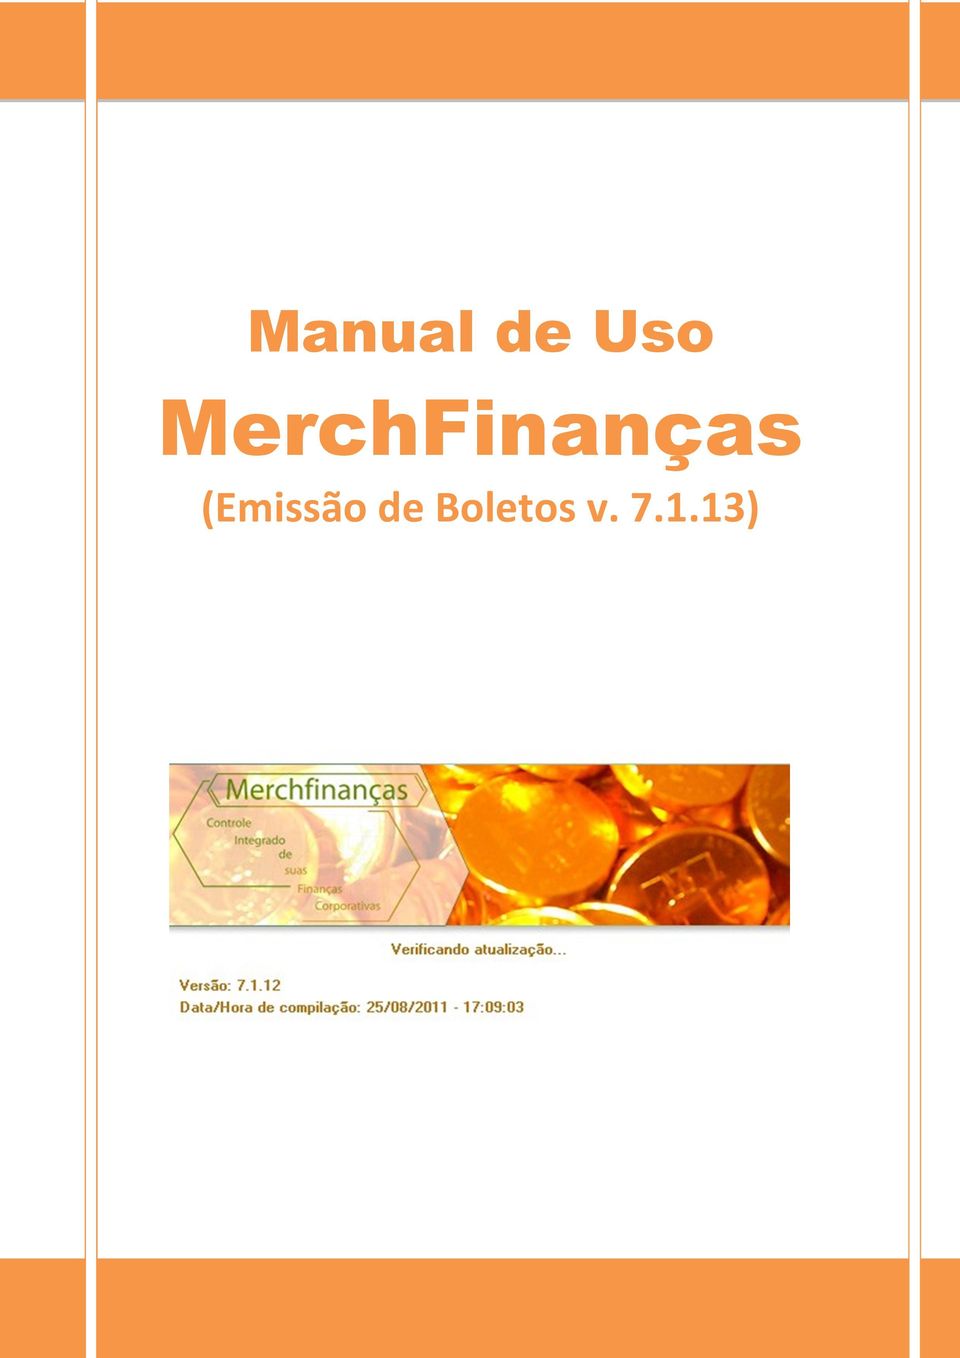 MerchFinanças